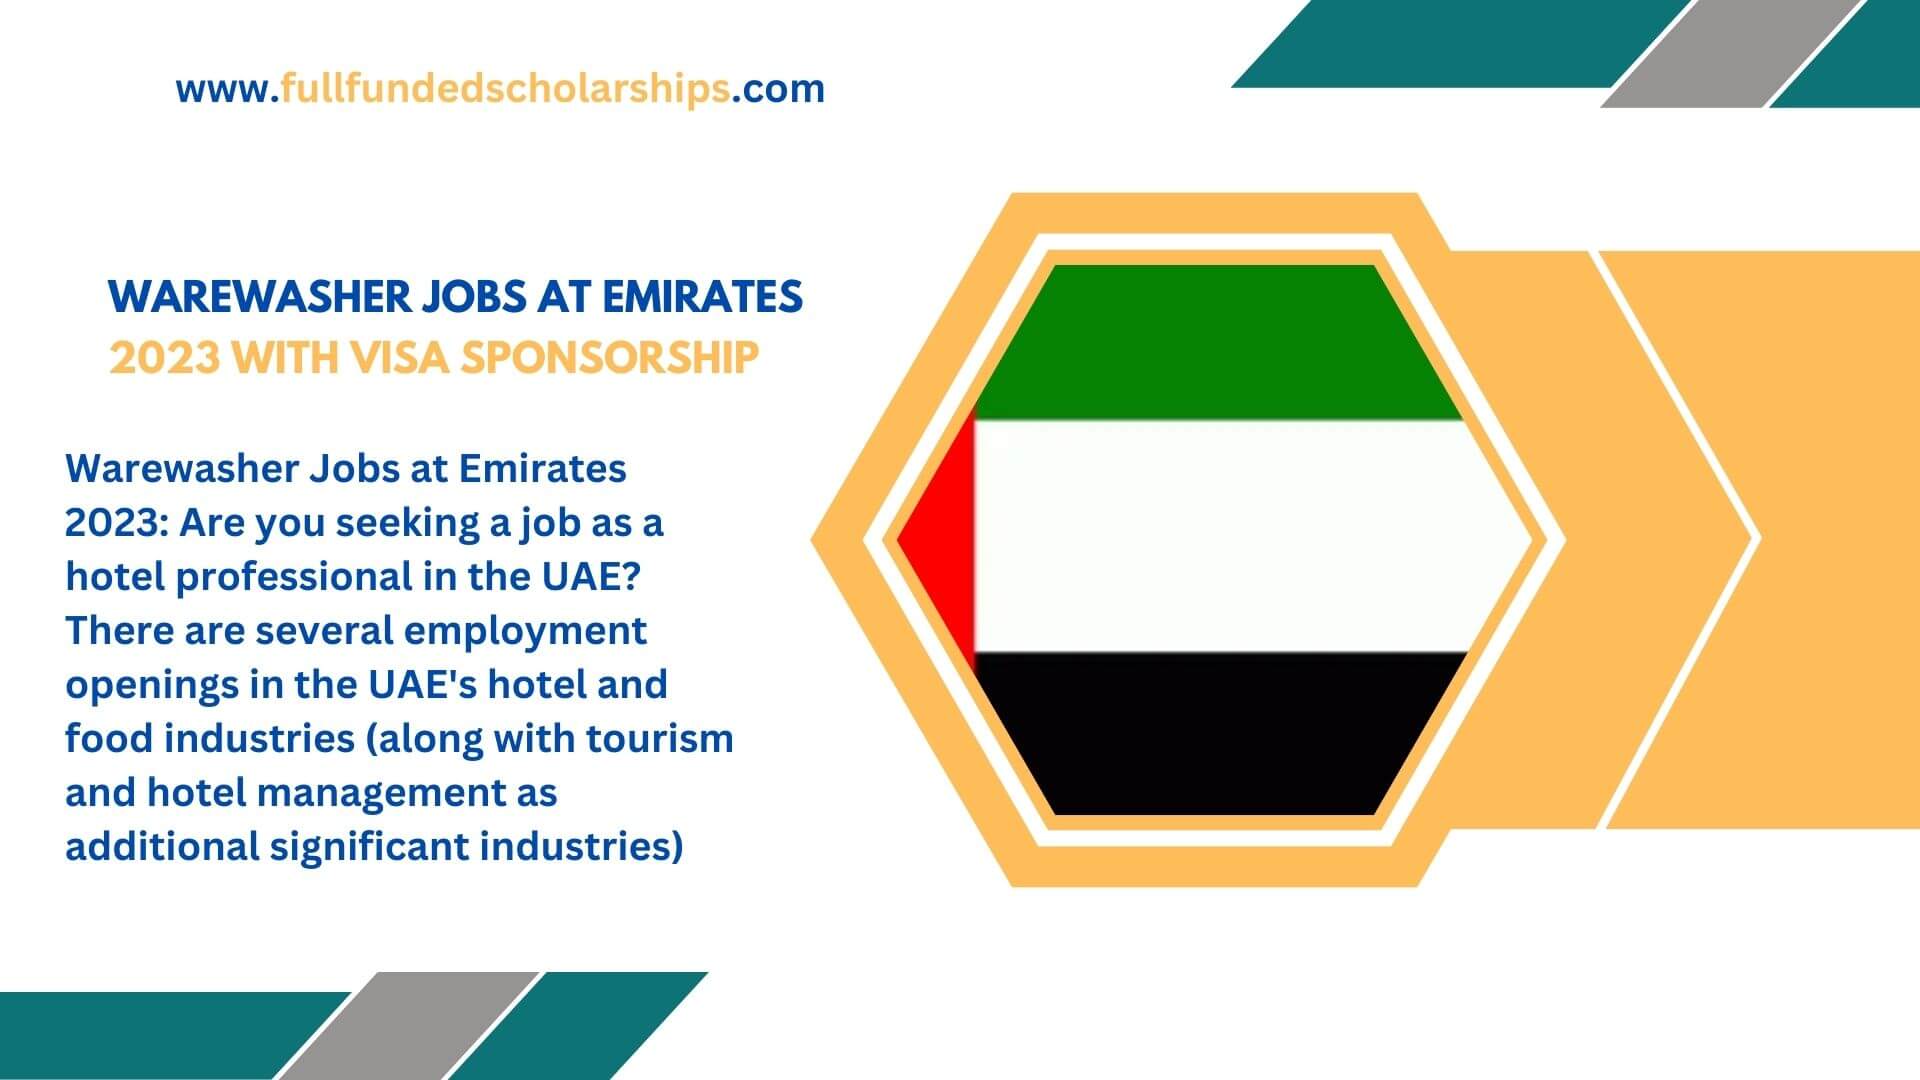 Warewasher Jobs at Emirates 2023 with Visa sponsorship